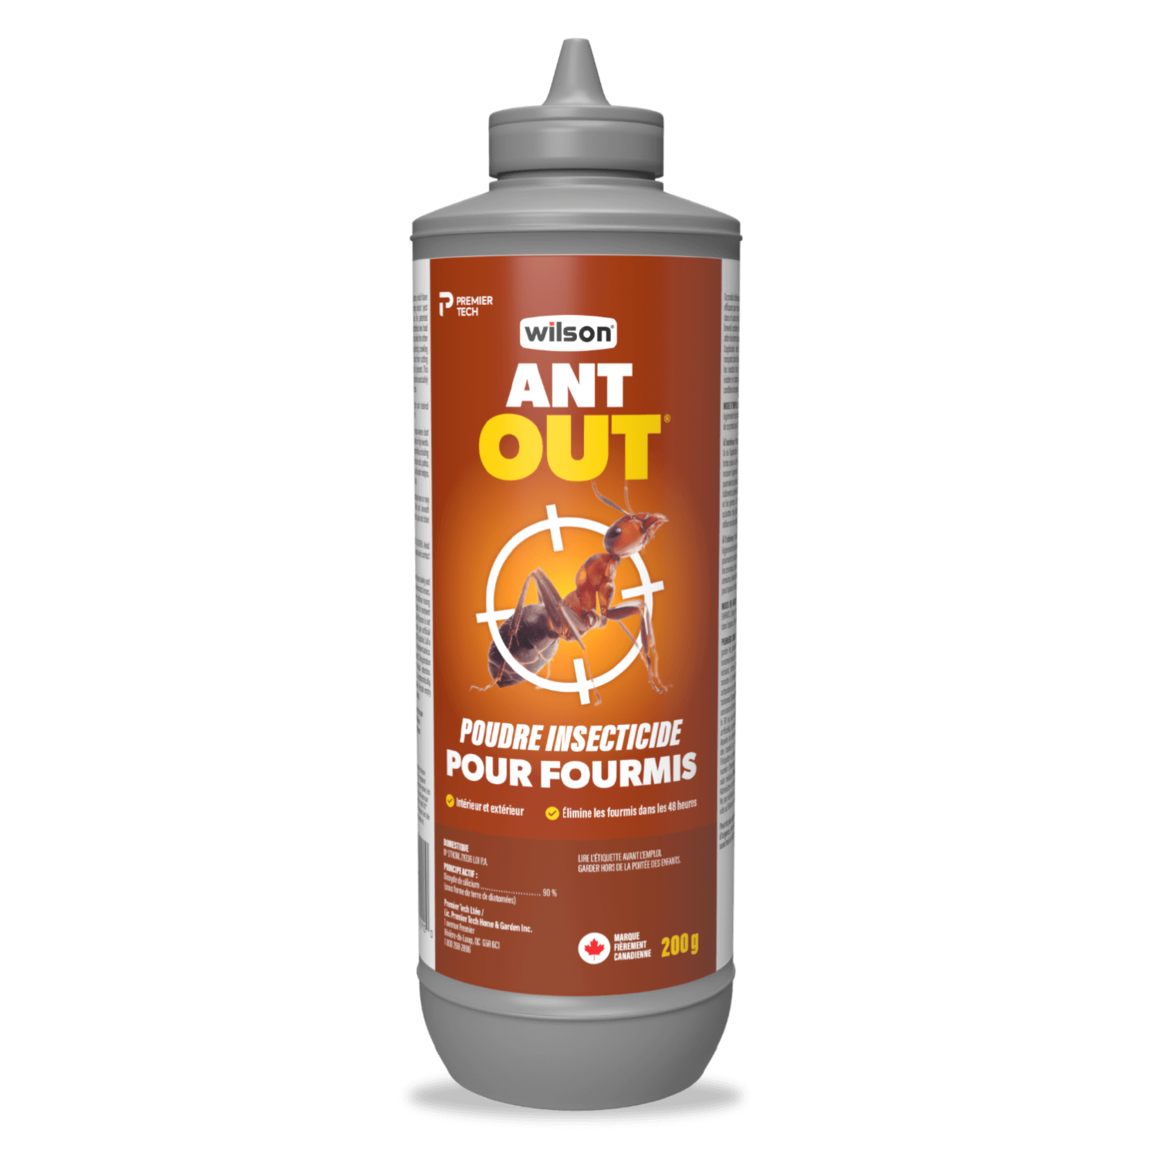 Poudre insecticide pour fourmis ANT OUT® de Wilson® - WILSON Poudre destructrice fourmis AntOut- terre diatomée 200g